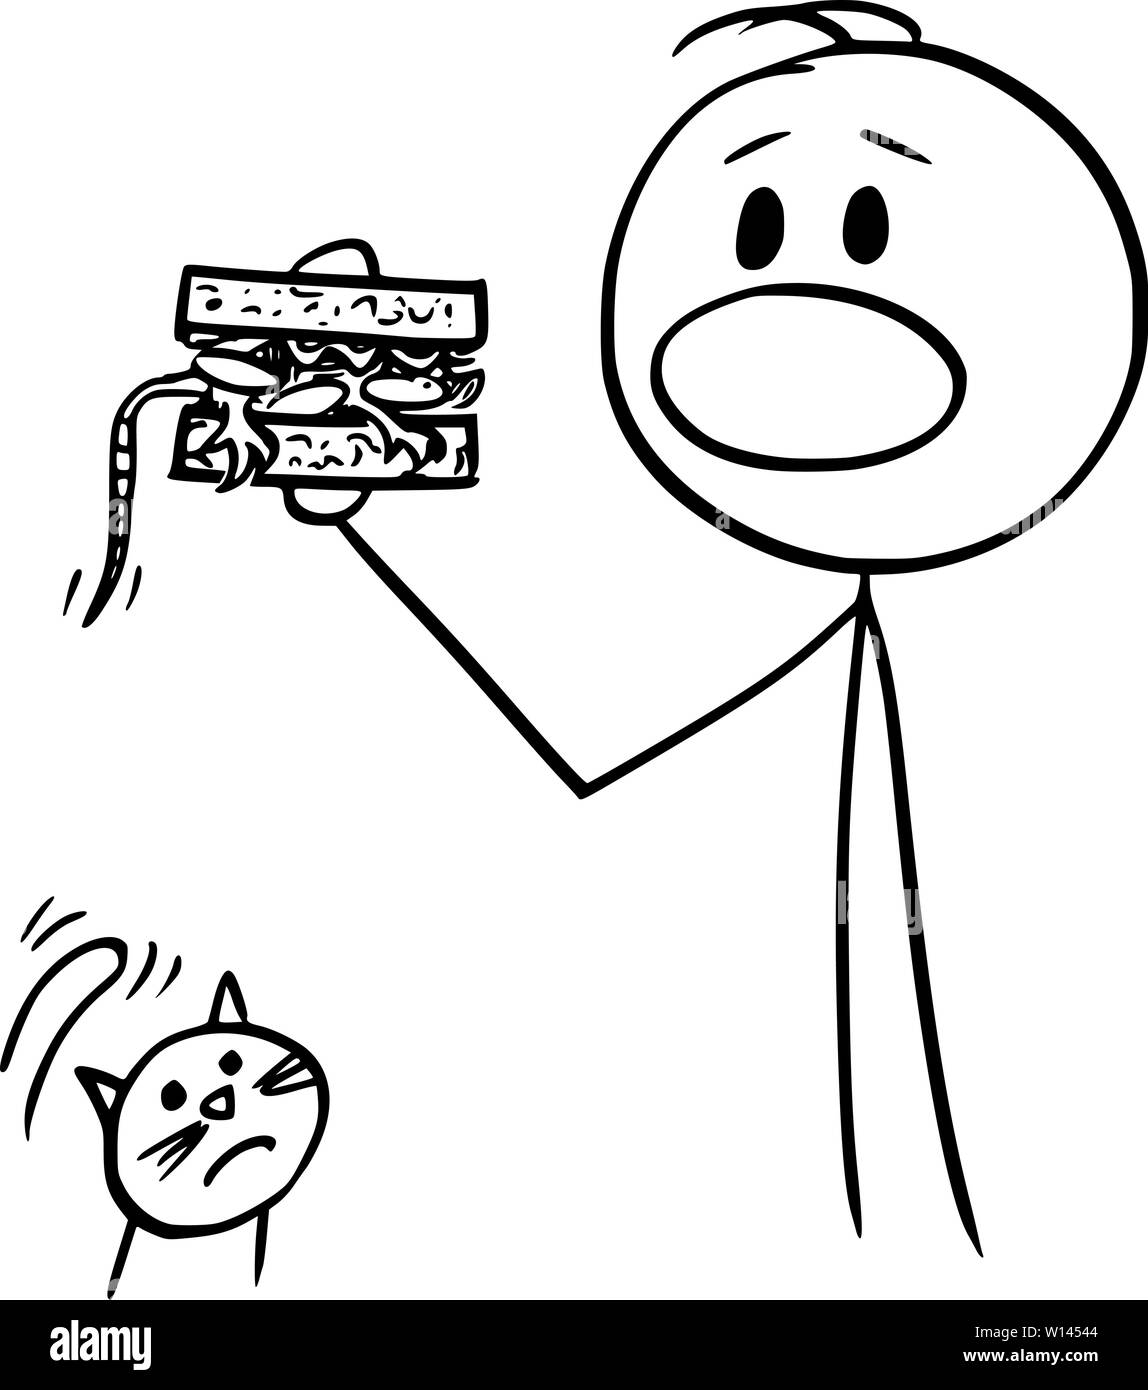 Vektor cartoon Strichmännchen Zeichnen konzeptionelle Darstellung der Mann sandwich versehentlich Essen mit der Maus innerhalb, unglückliche Katze ist und ihn beobachtete. Stock Vektor